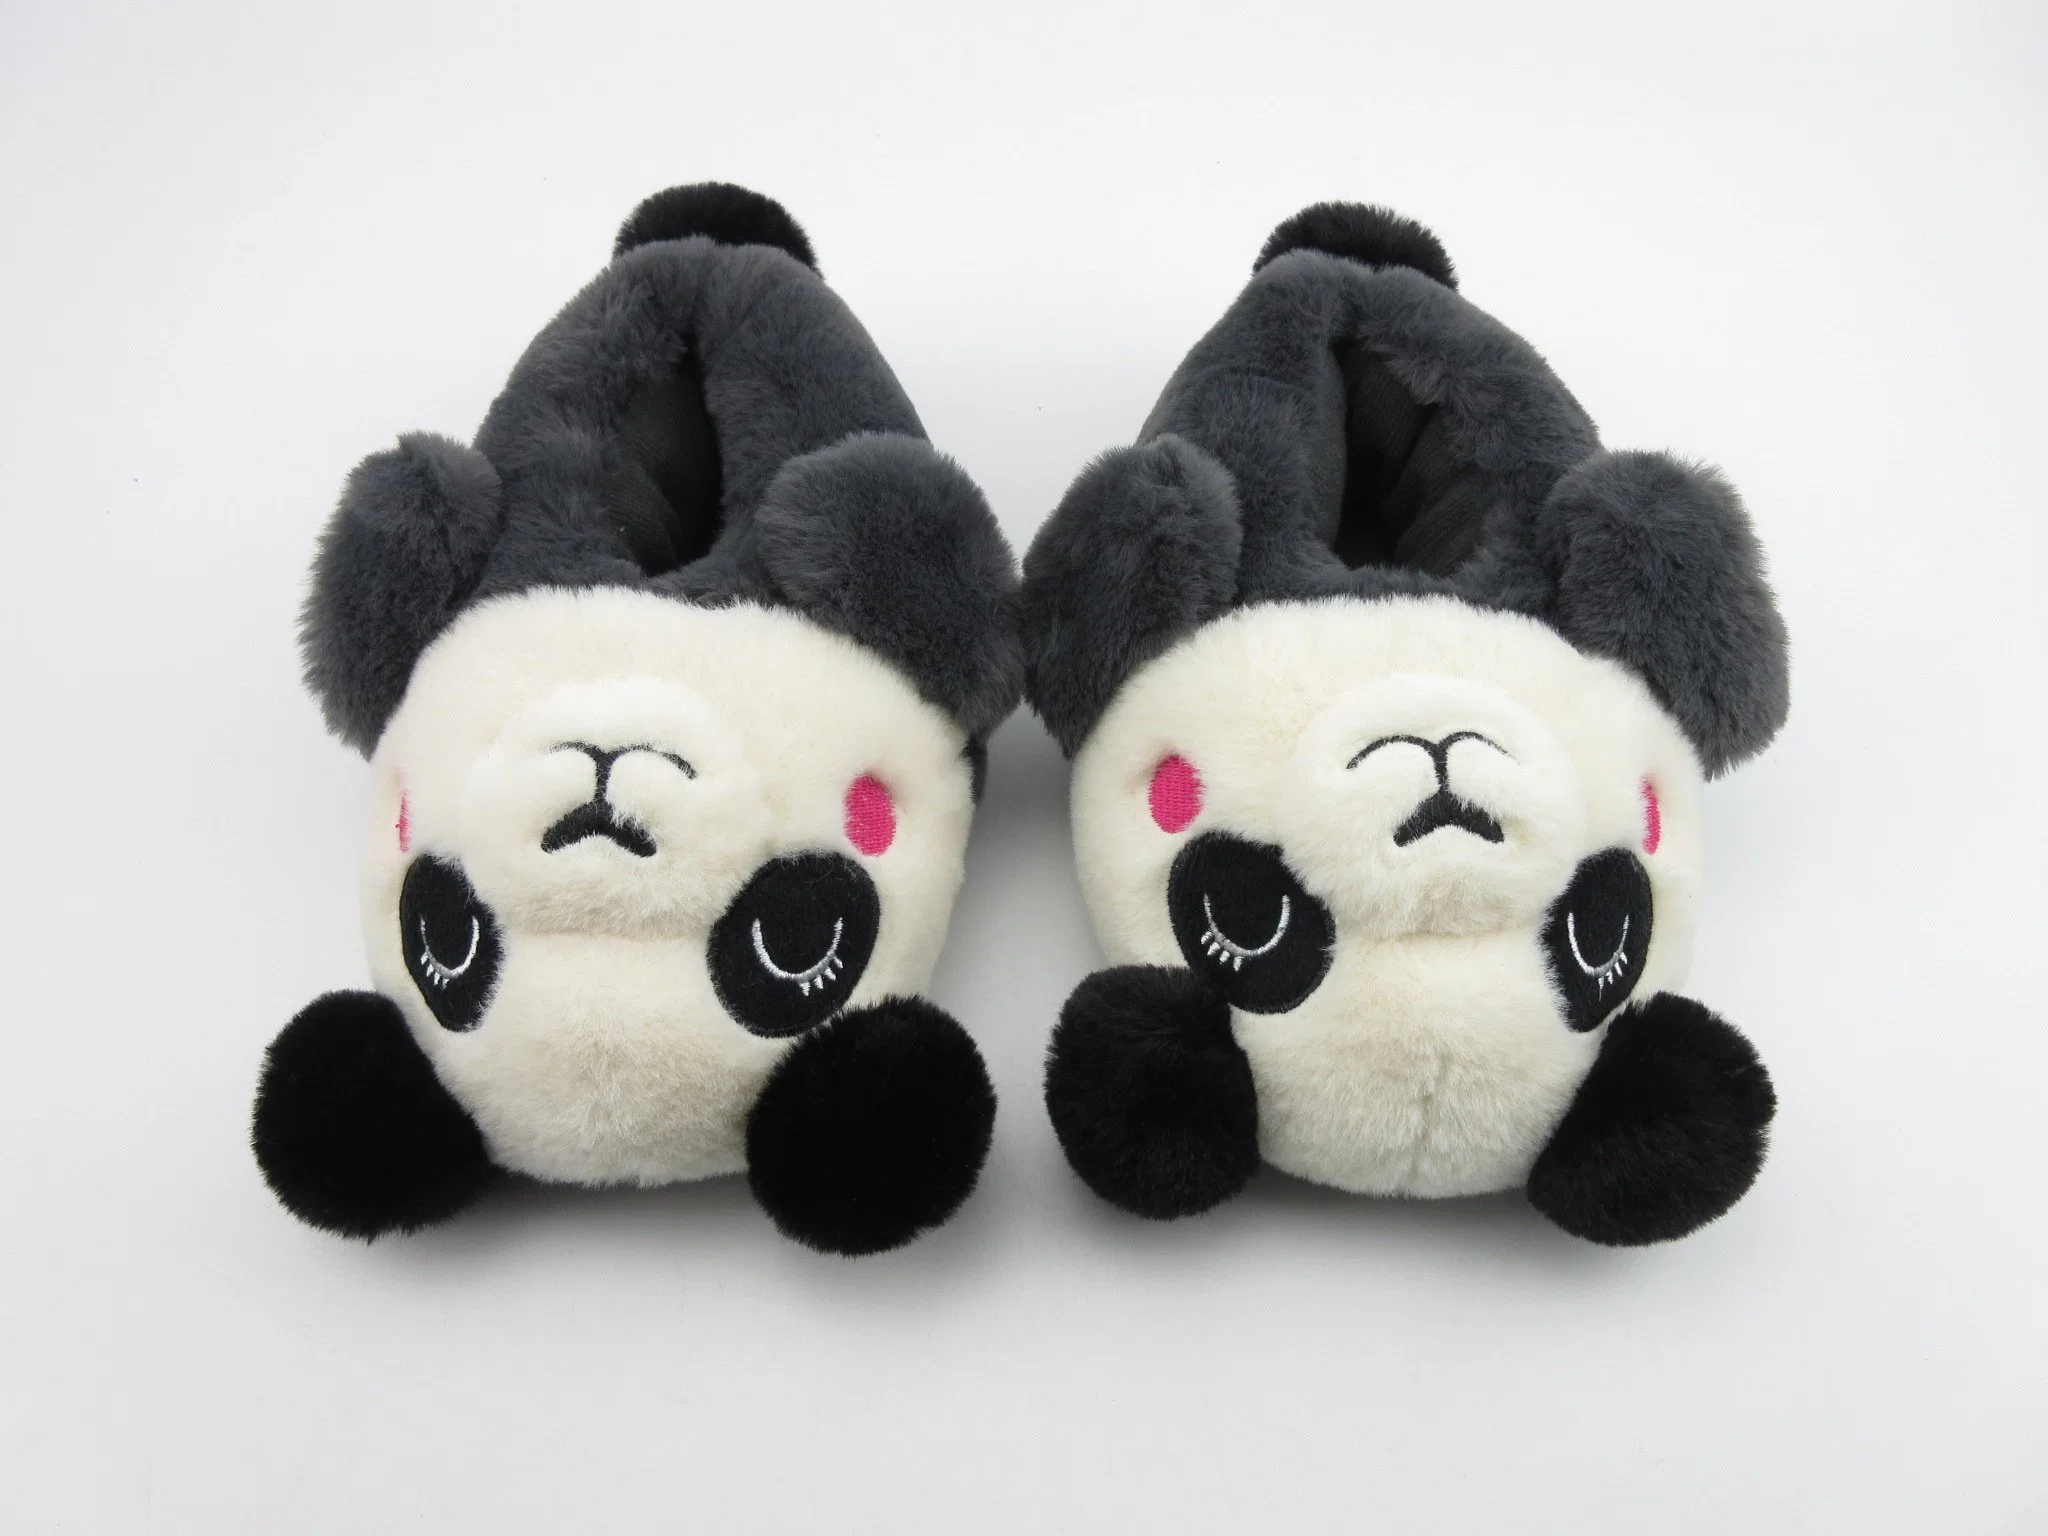 Indoor Plüsch Schuhe Niedlich Neuheit Schuhe Custom Spielzeug Panda Tier Slipper